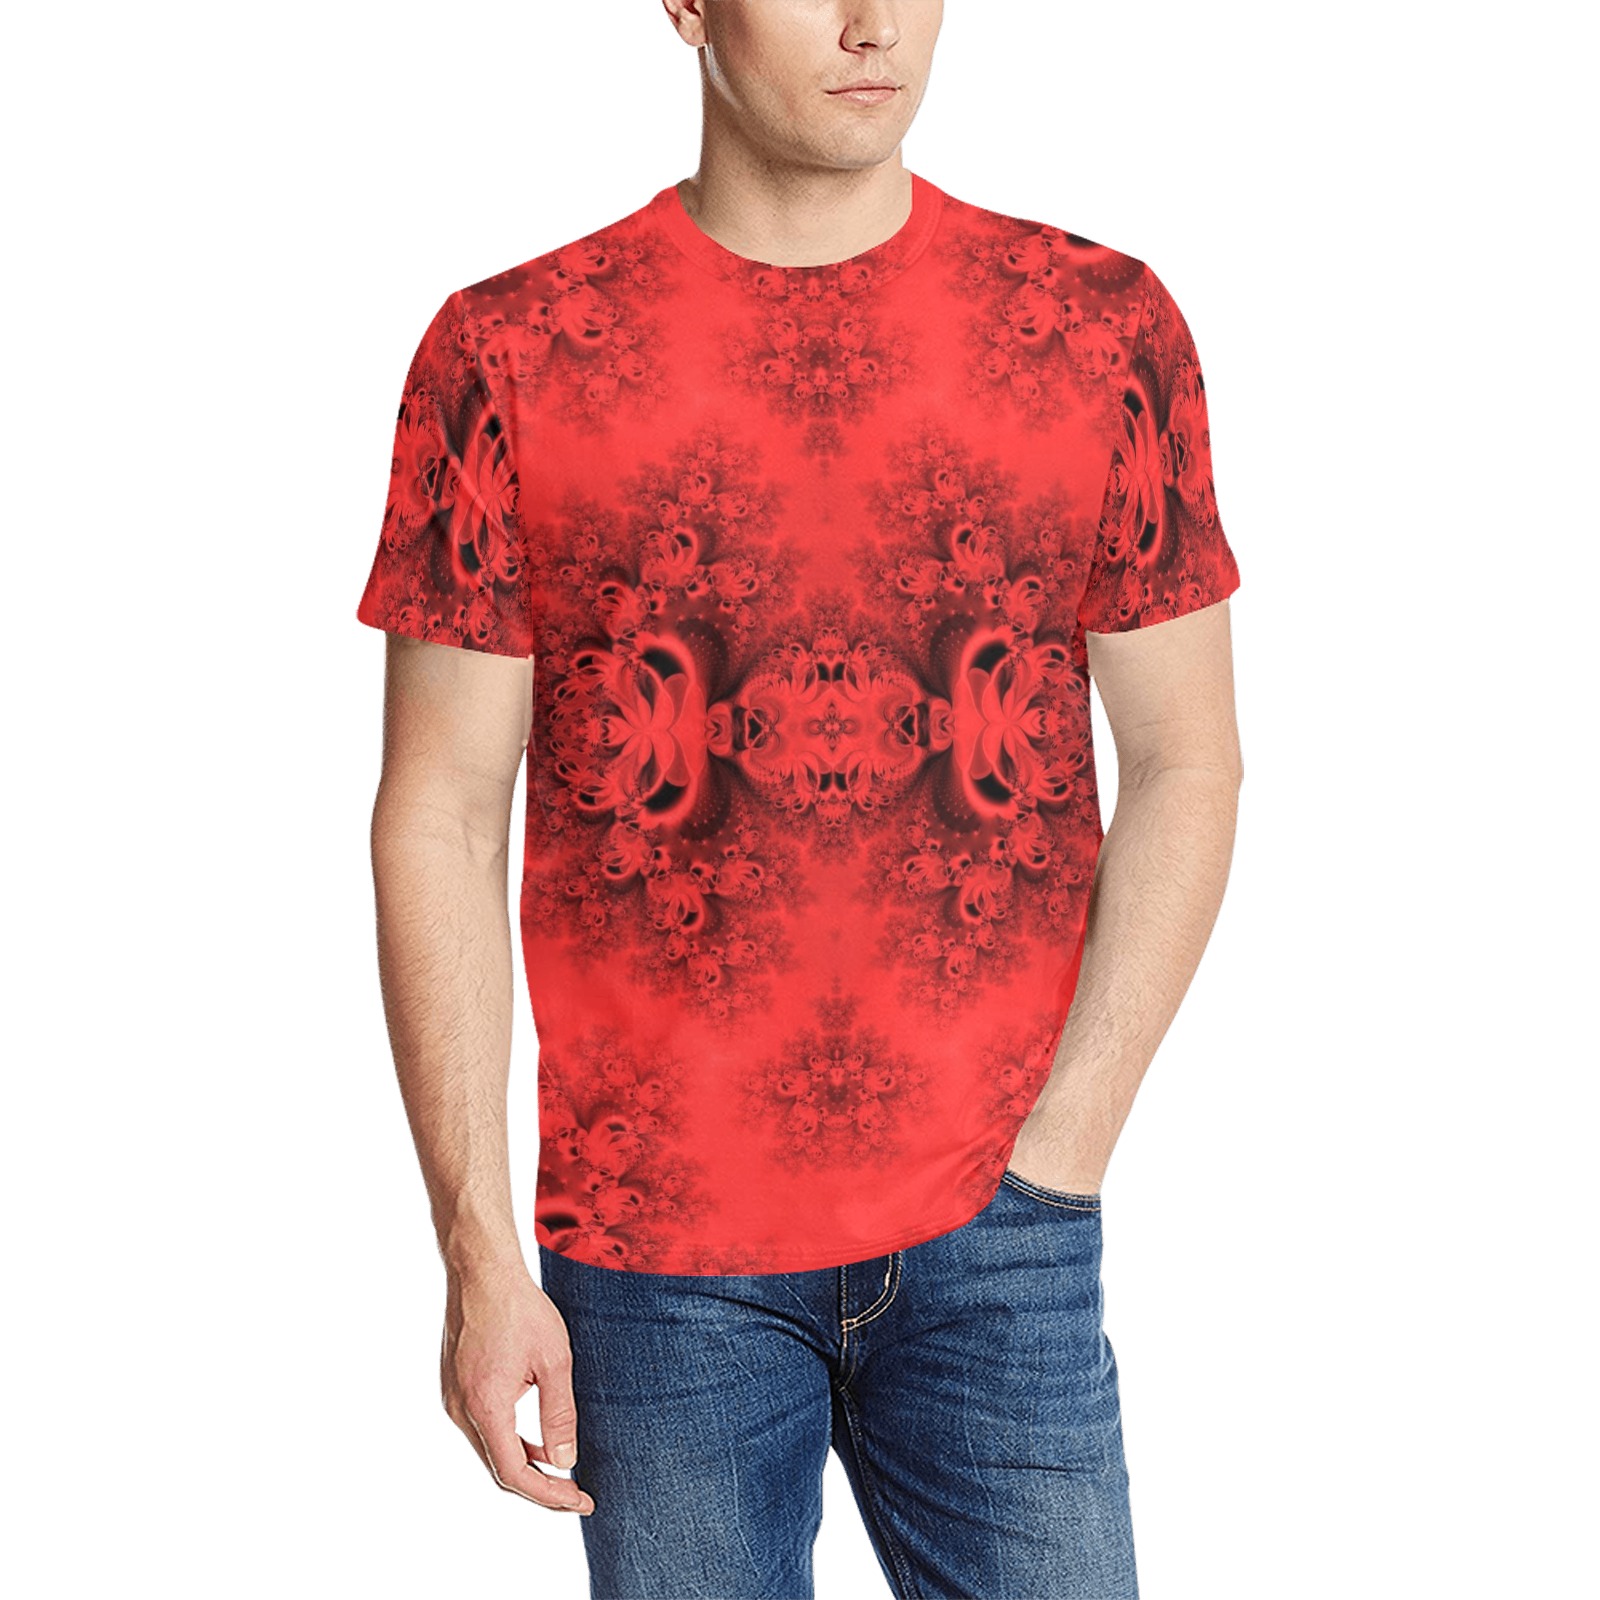 Autumn Reds in the Garden Frost Fractal Men's All Over Print T-Shirt (Random Design Neck) (Model T63)